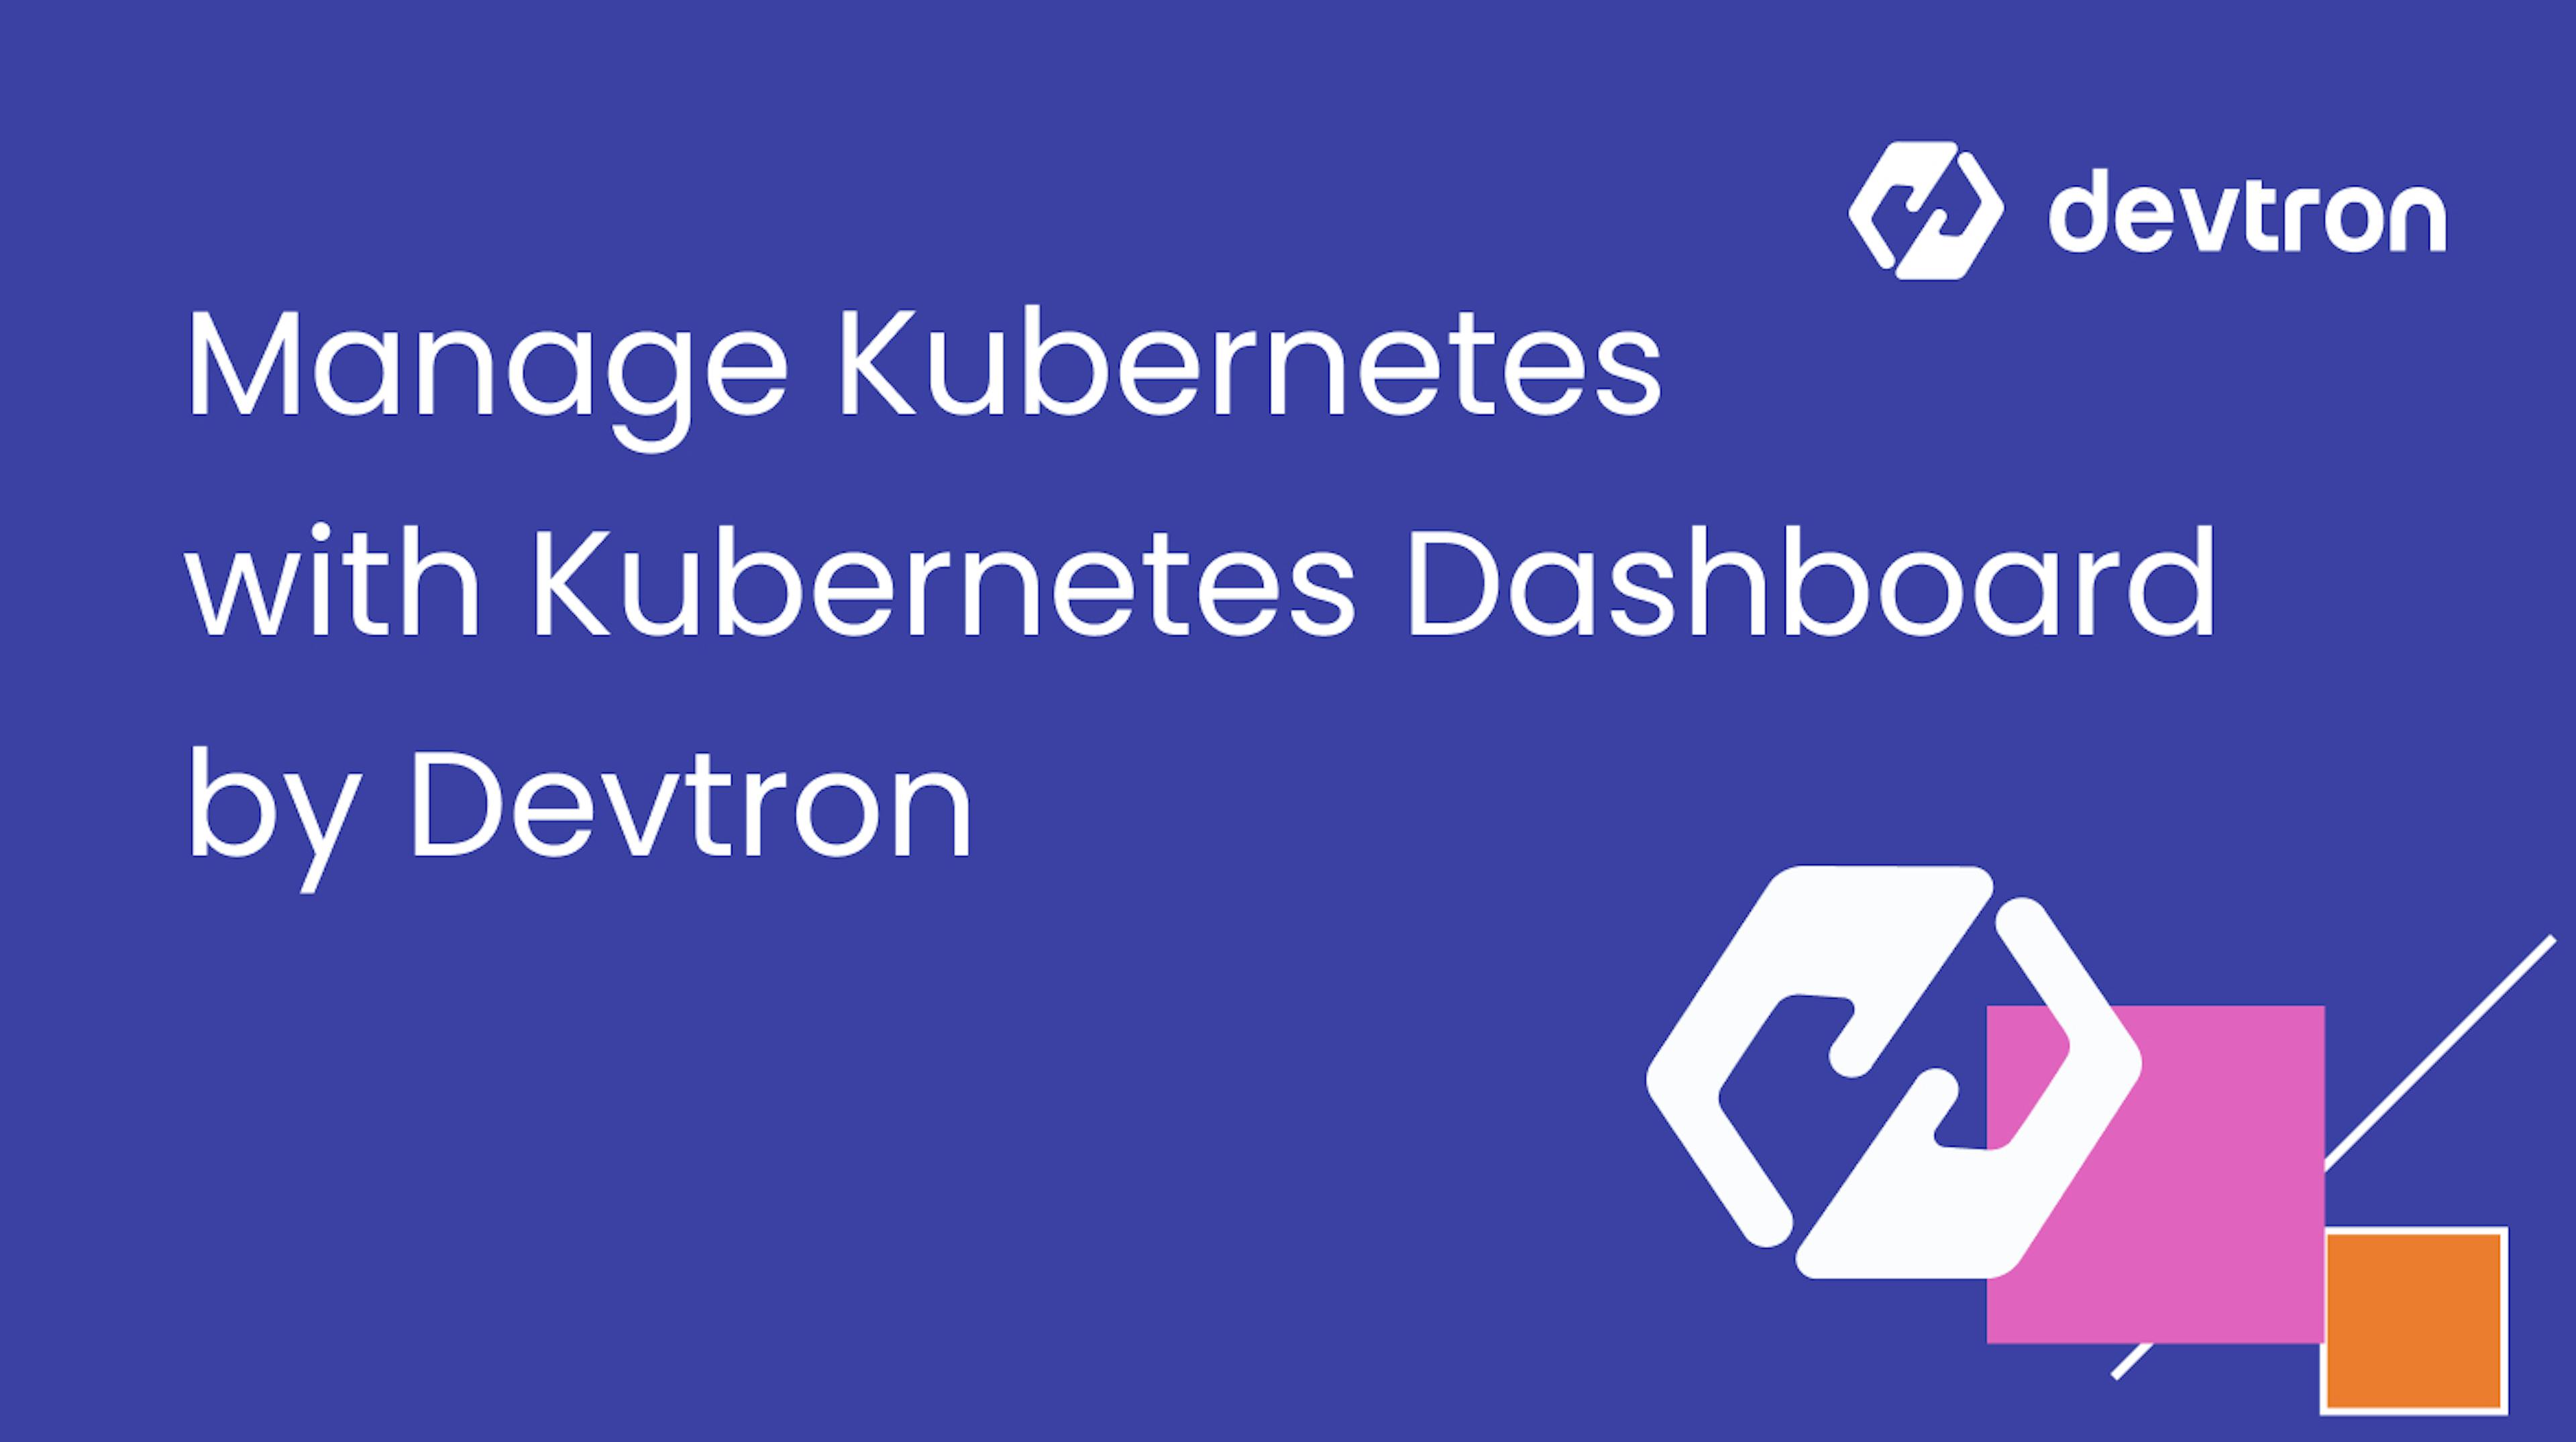 featured image - Cách quản lý Kubernetes như một chuyên gia với Bảng điều khiển Kubernetes của Devtron